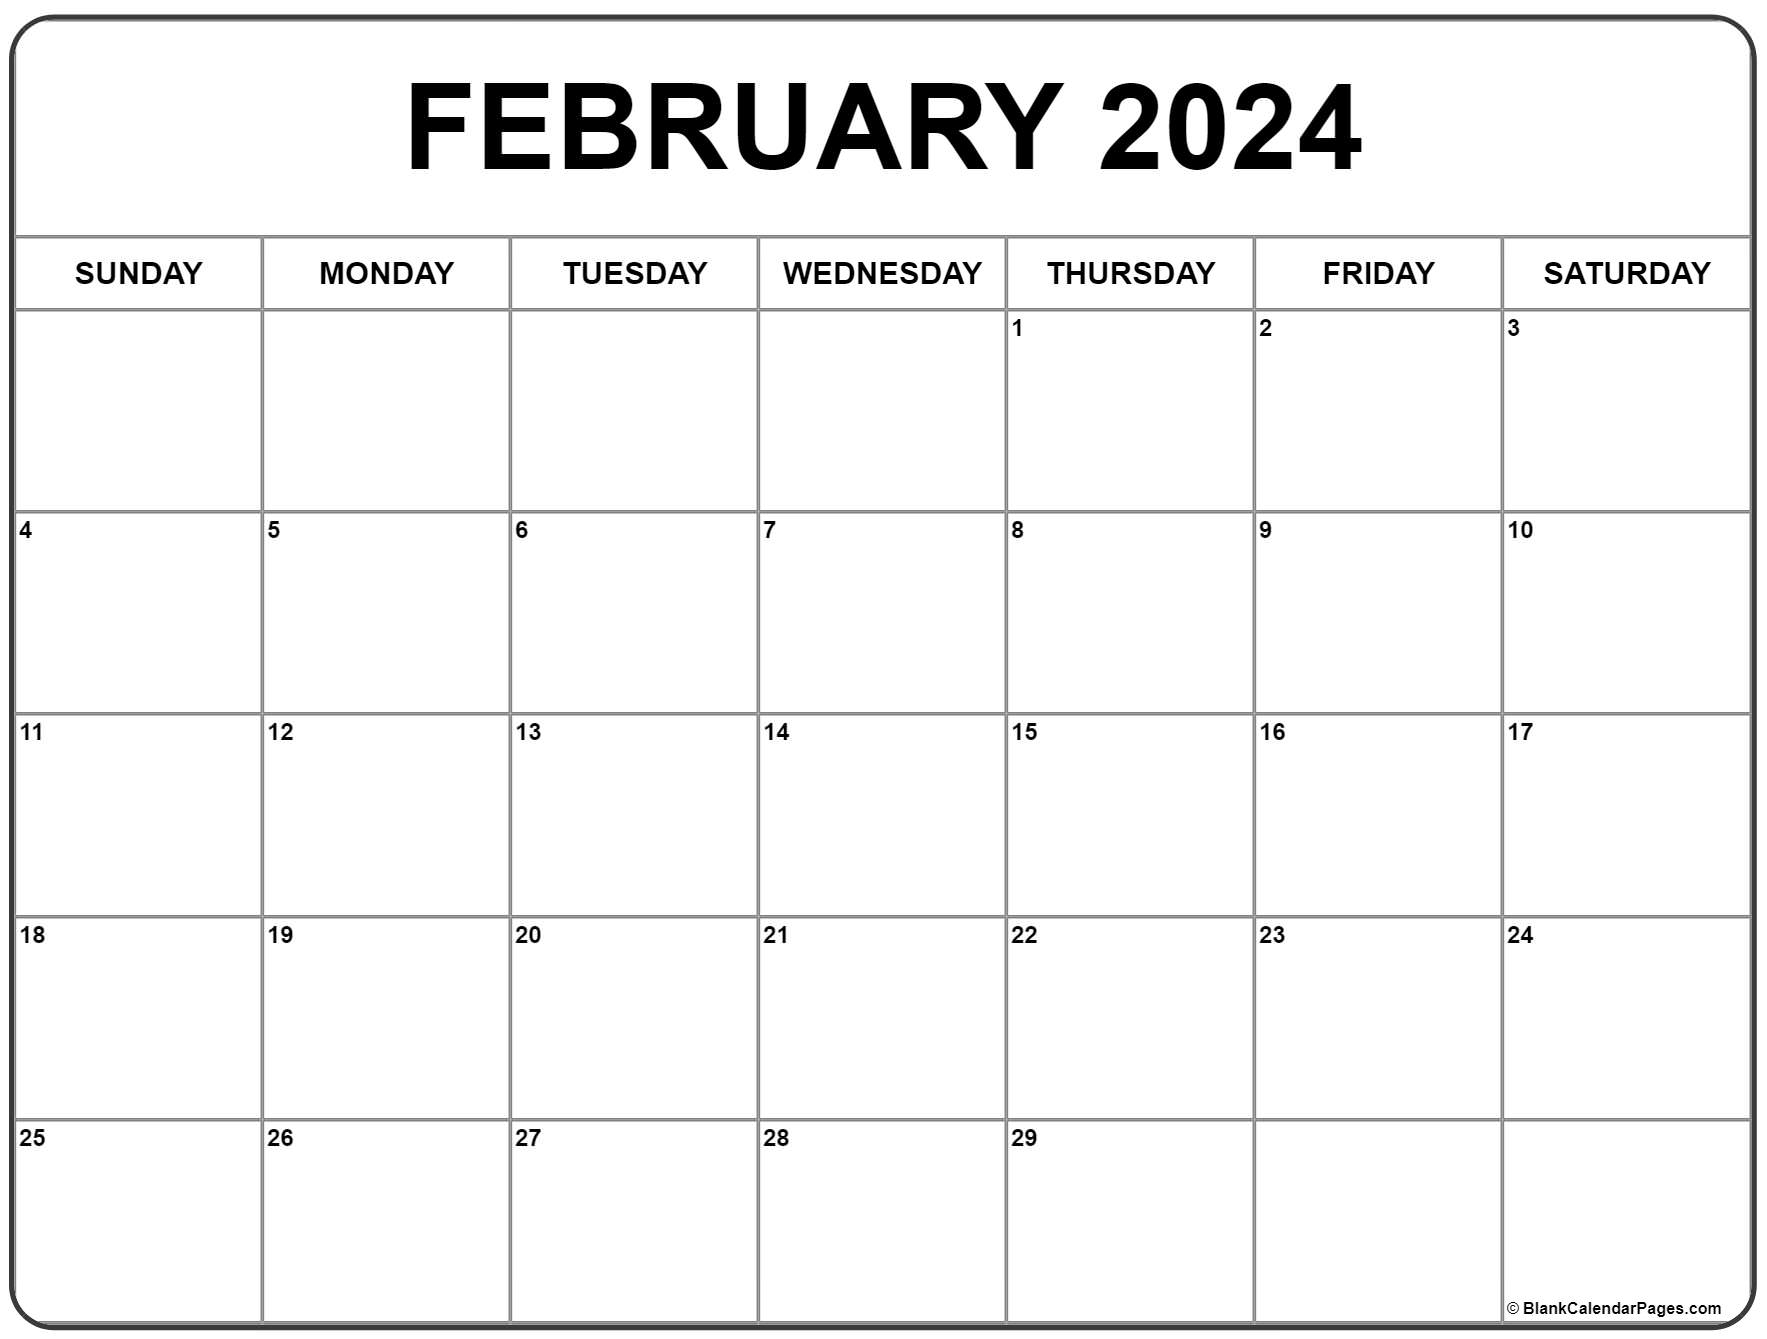 February 2024 Calendar | Free Printable Calendar for 2024 February Calendar Printable